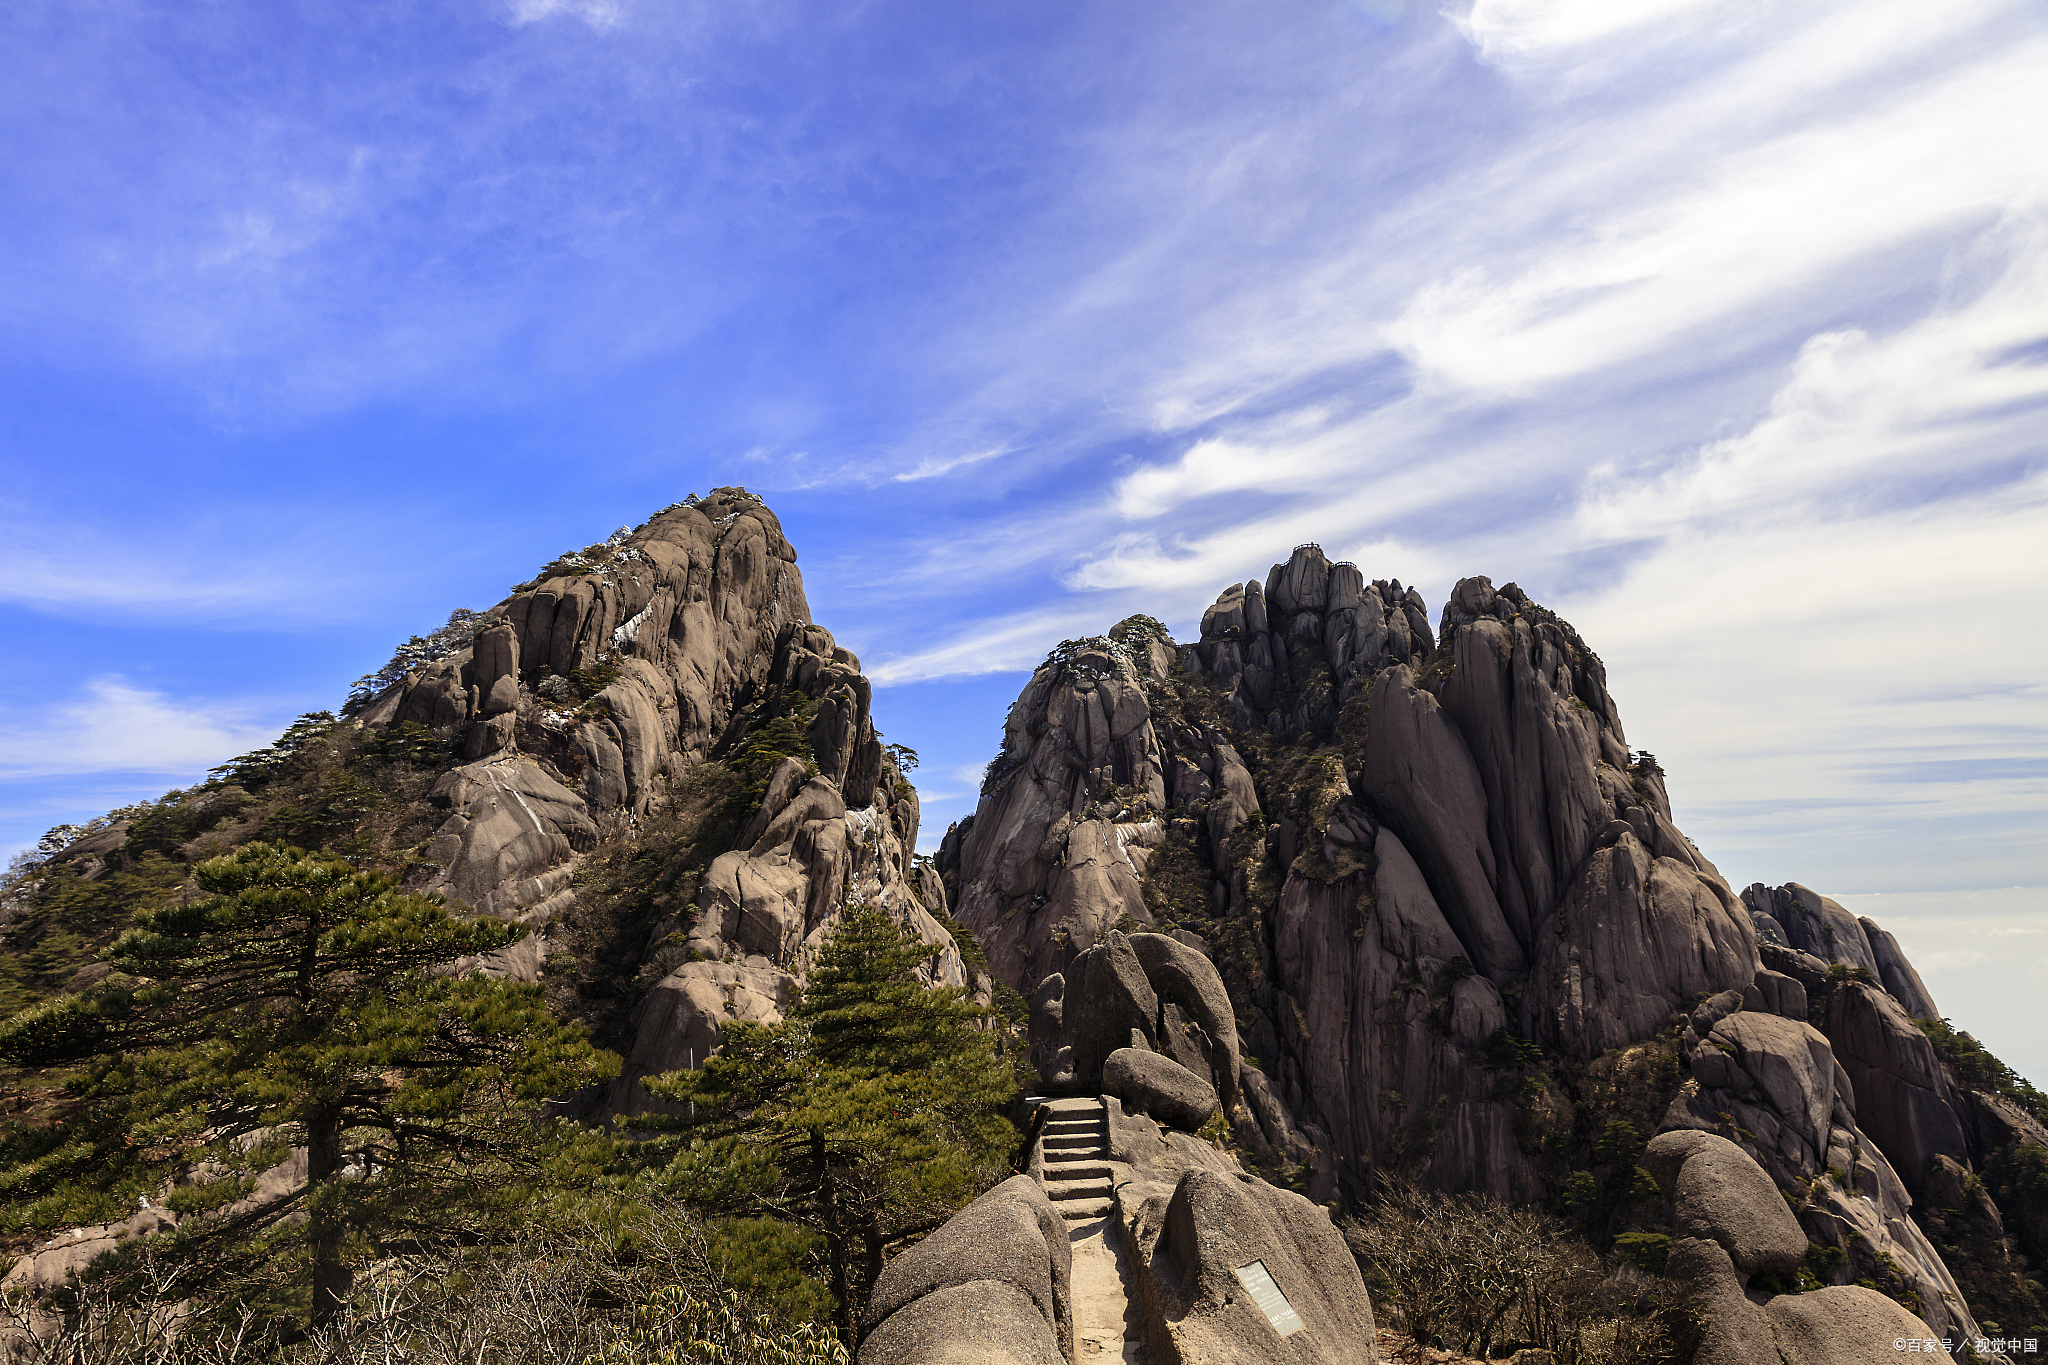 以下是对莲花峰的详细介绍:莲花峰风景区主峰海拔1143米,总面积15平方